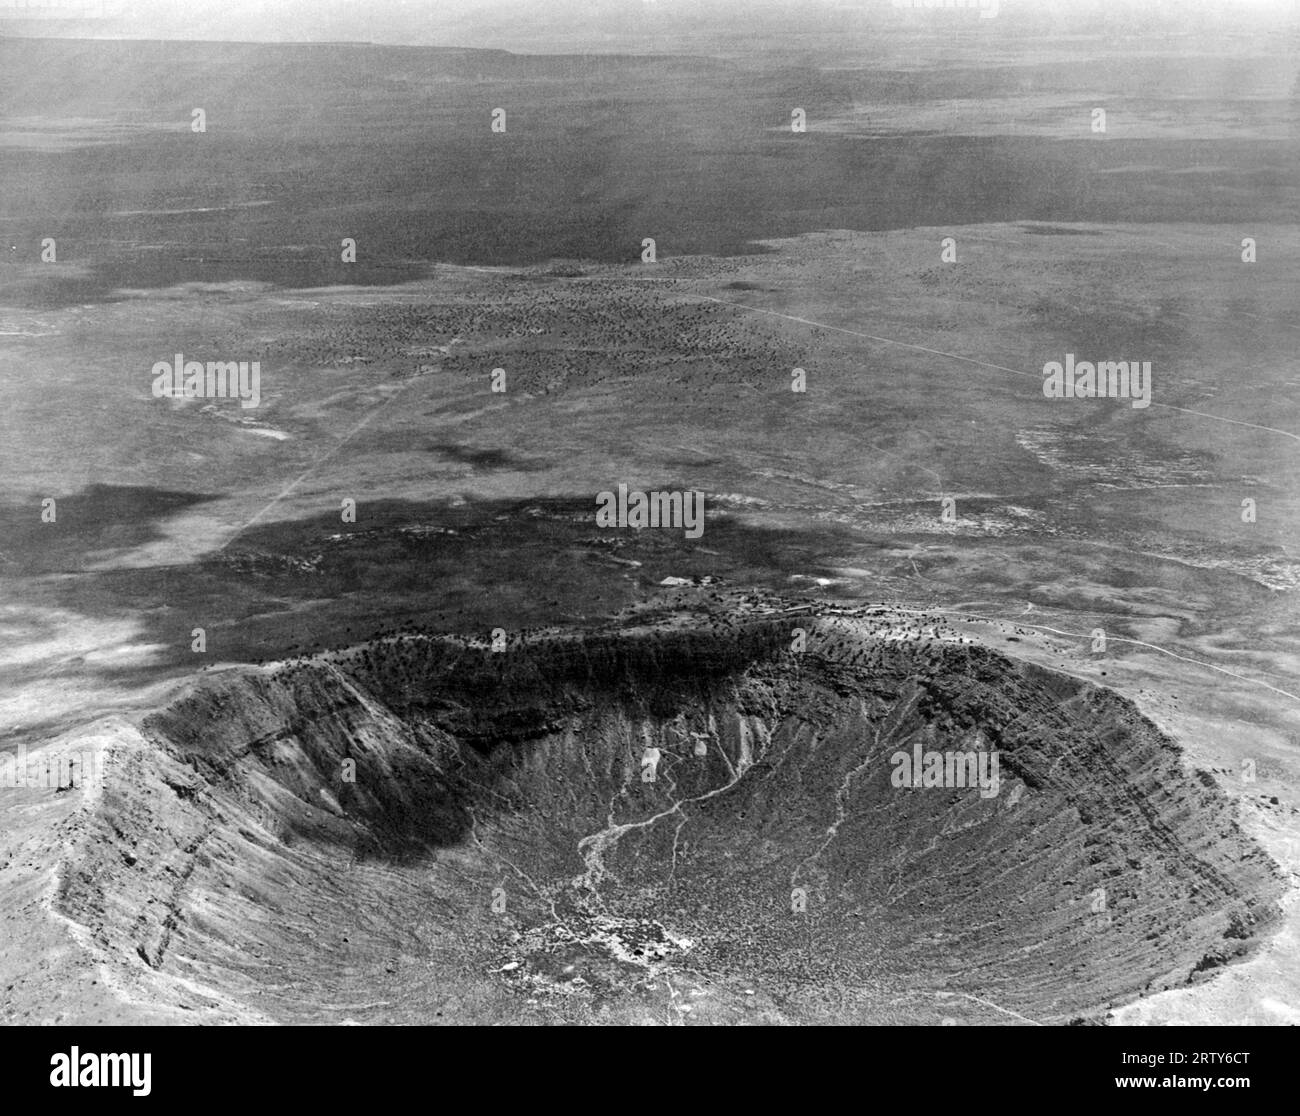 Winslow, Arizona vers 1935 une vue aérienne du cratère des météorites, causée par un météore qui y a frappé il y a 200 ans. La zone sombre provient d'un nuage passant. Banque D'Images